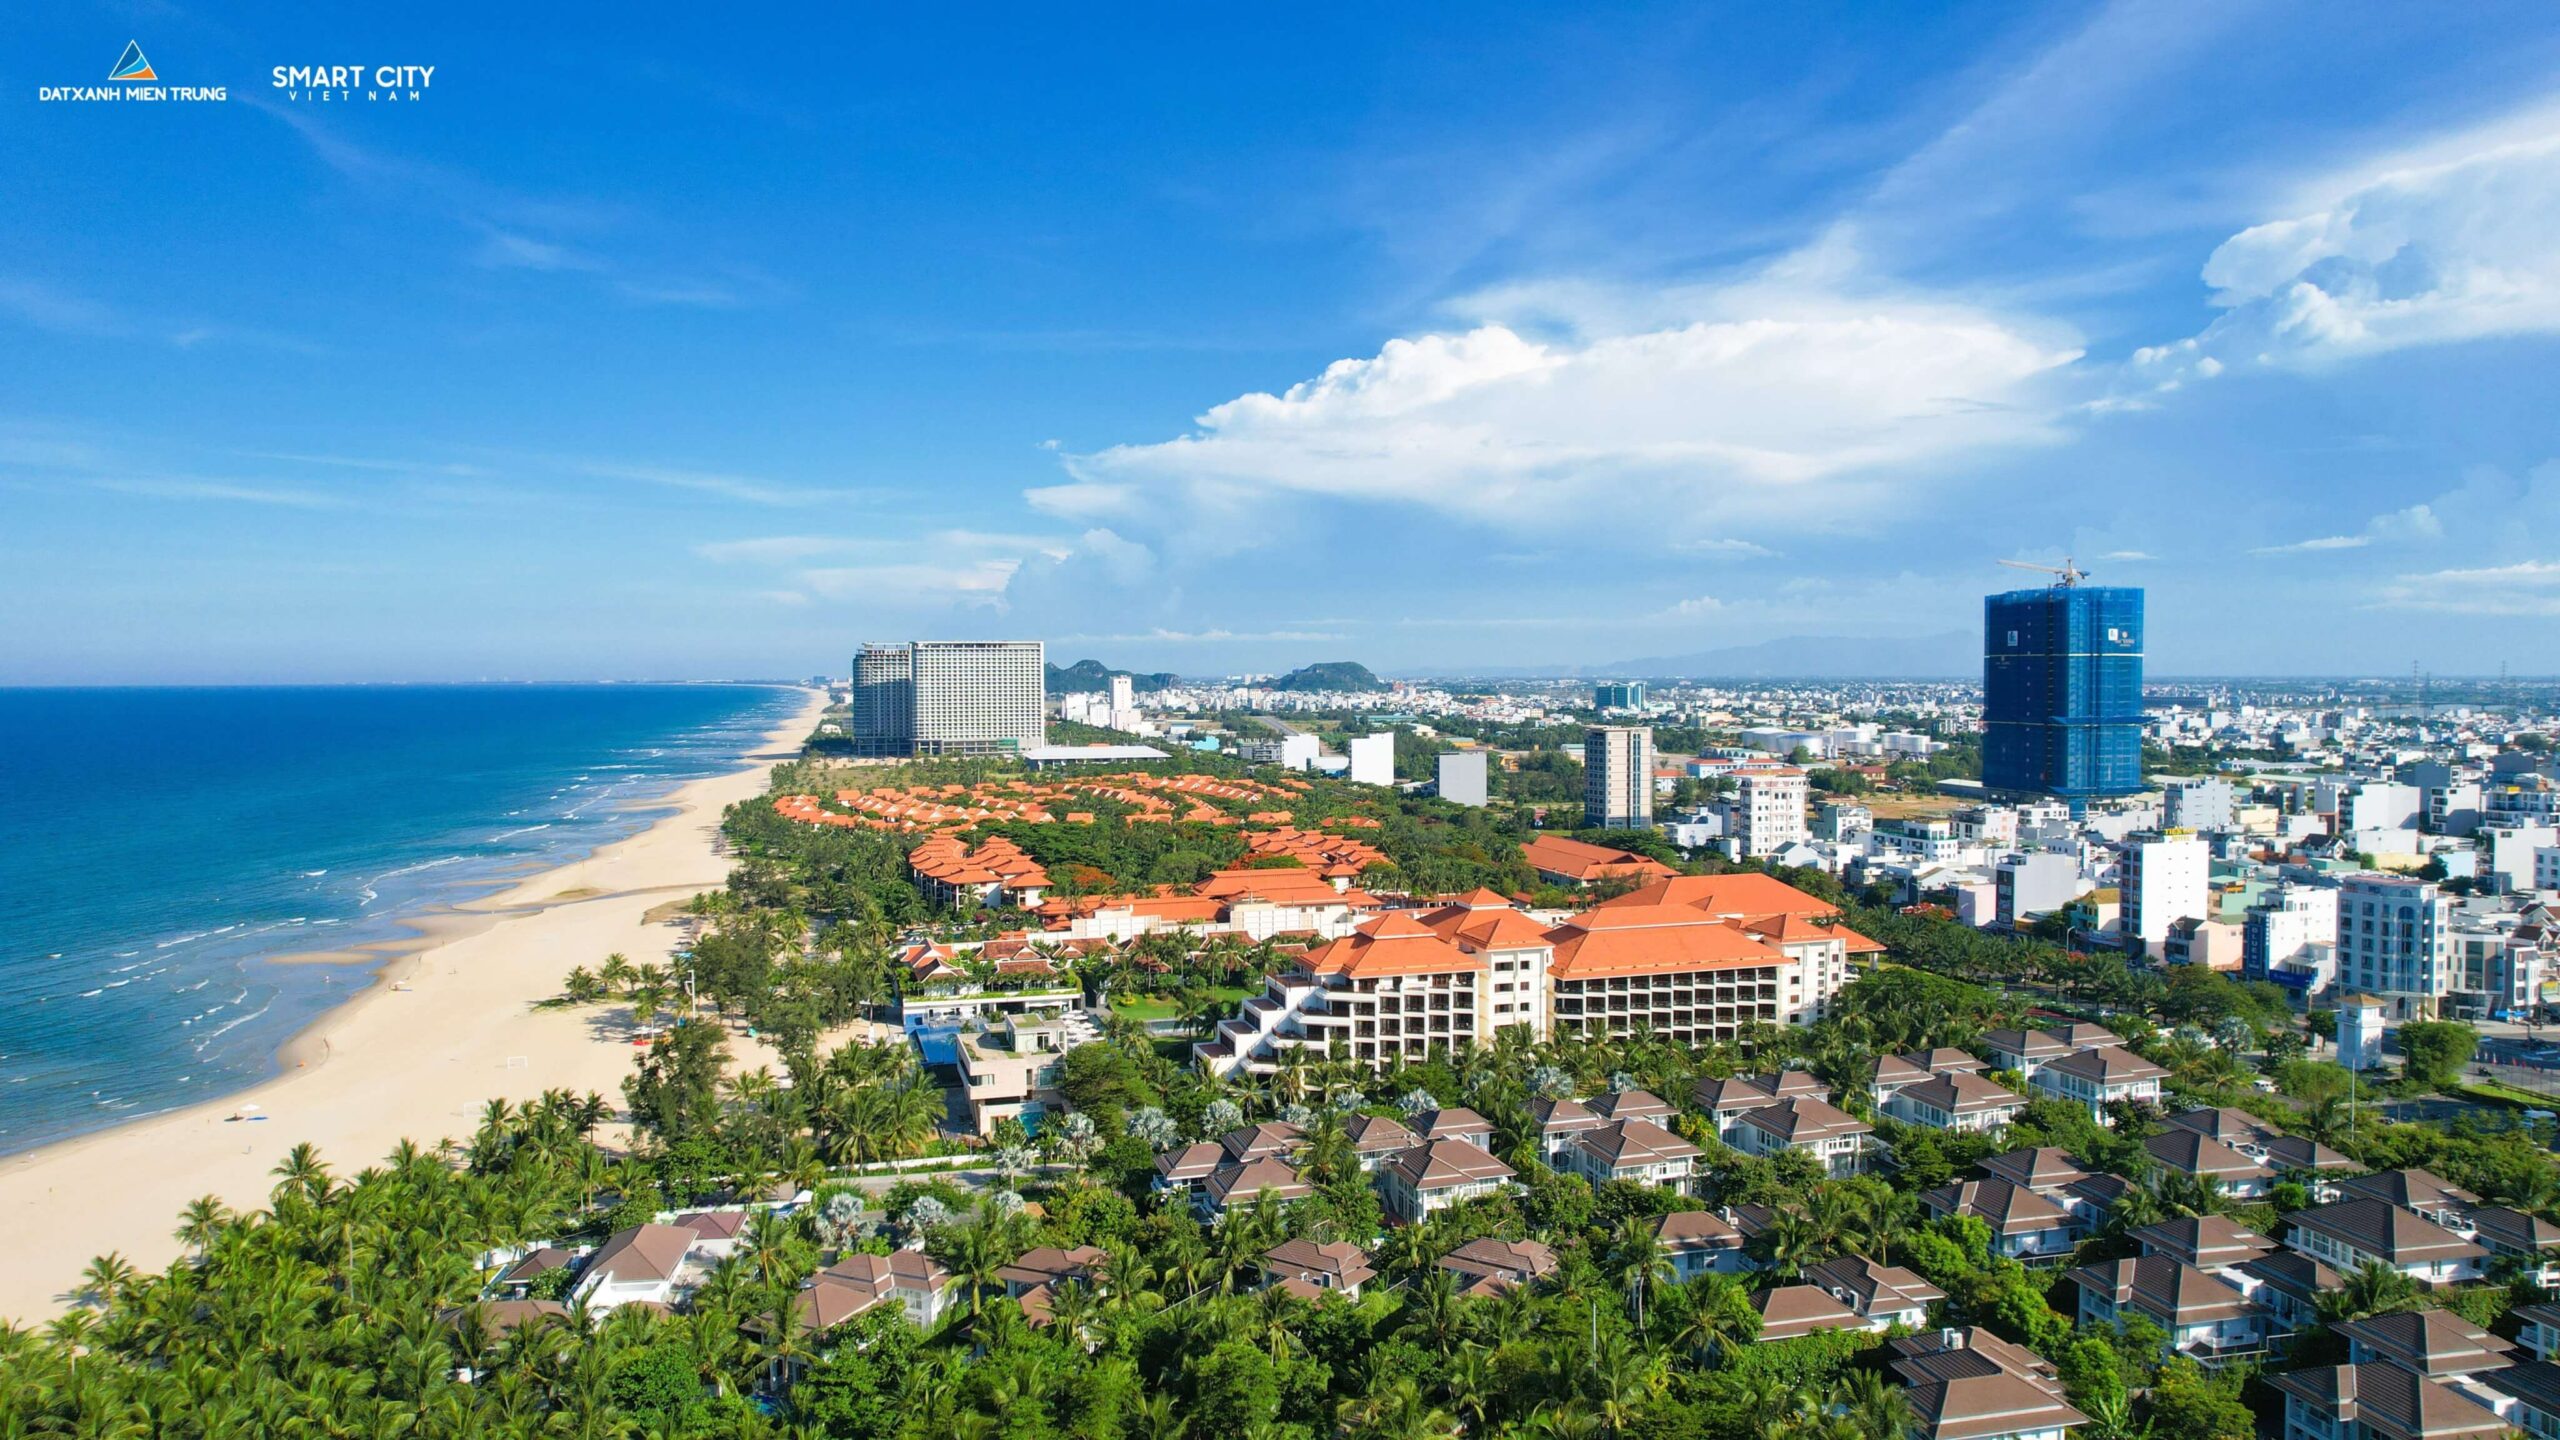 Mỹ Khê Vào Top 10 Bãi Biển Đẹp Nhất Châu Á - Viet Nam Smart City